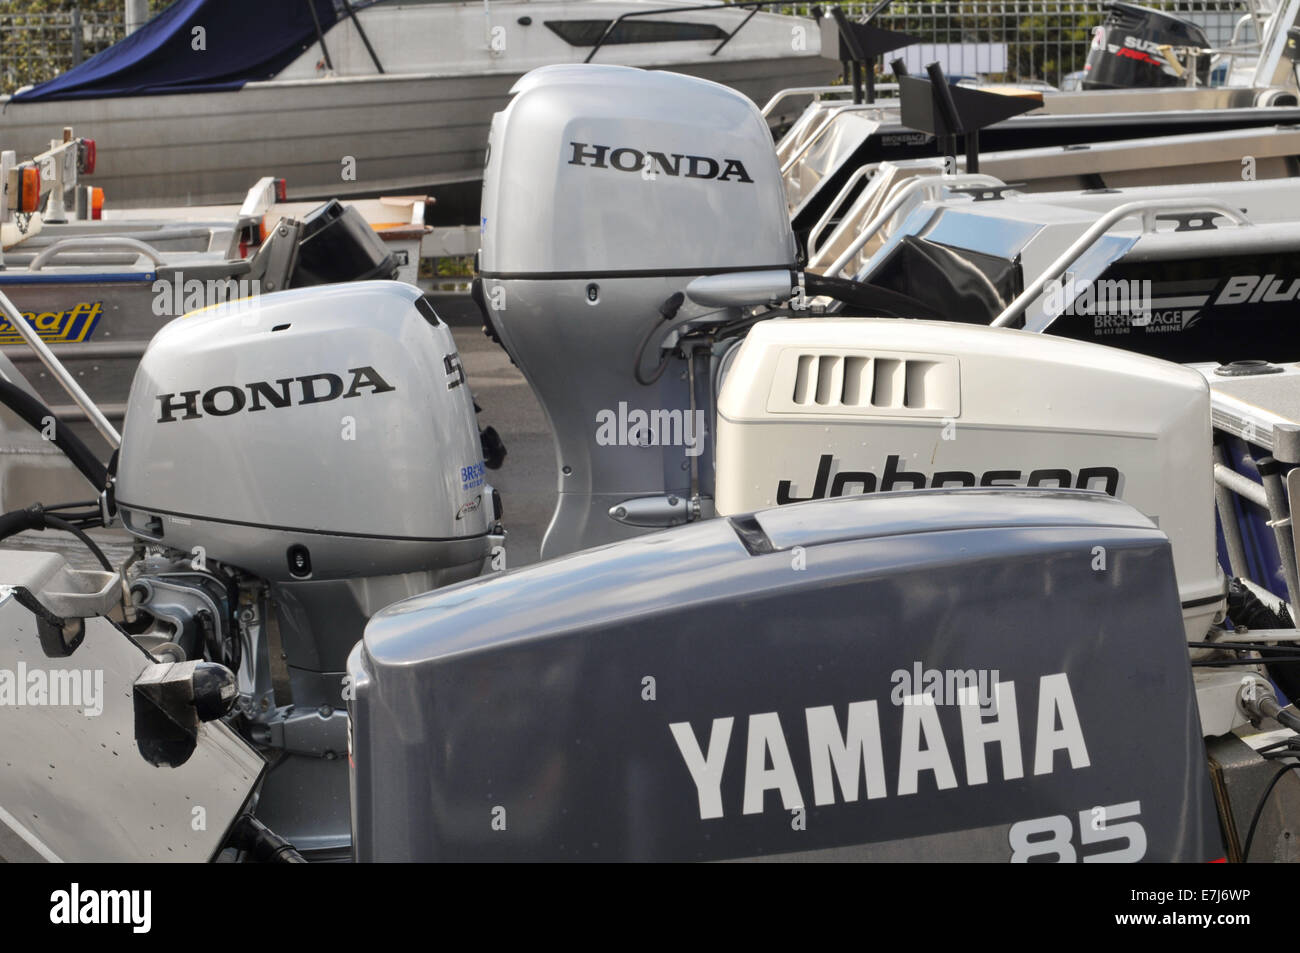 Vari motori fuoribordo sui traversi di imbarcazioni da diporto in boat yard pronti per la vendita Foto Stock